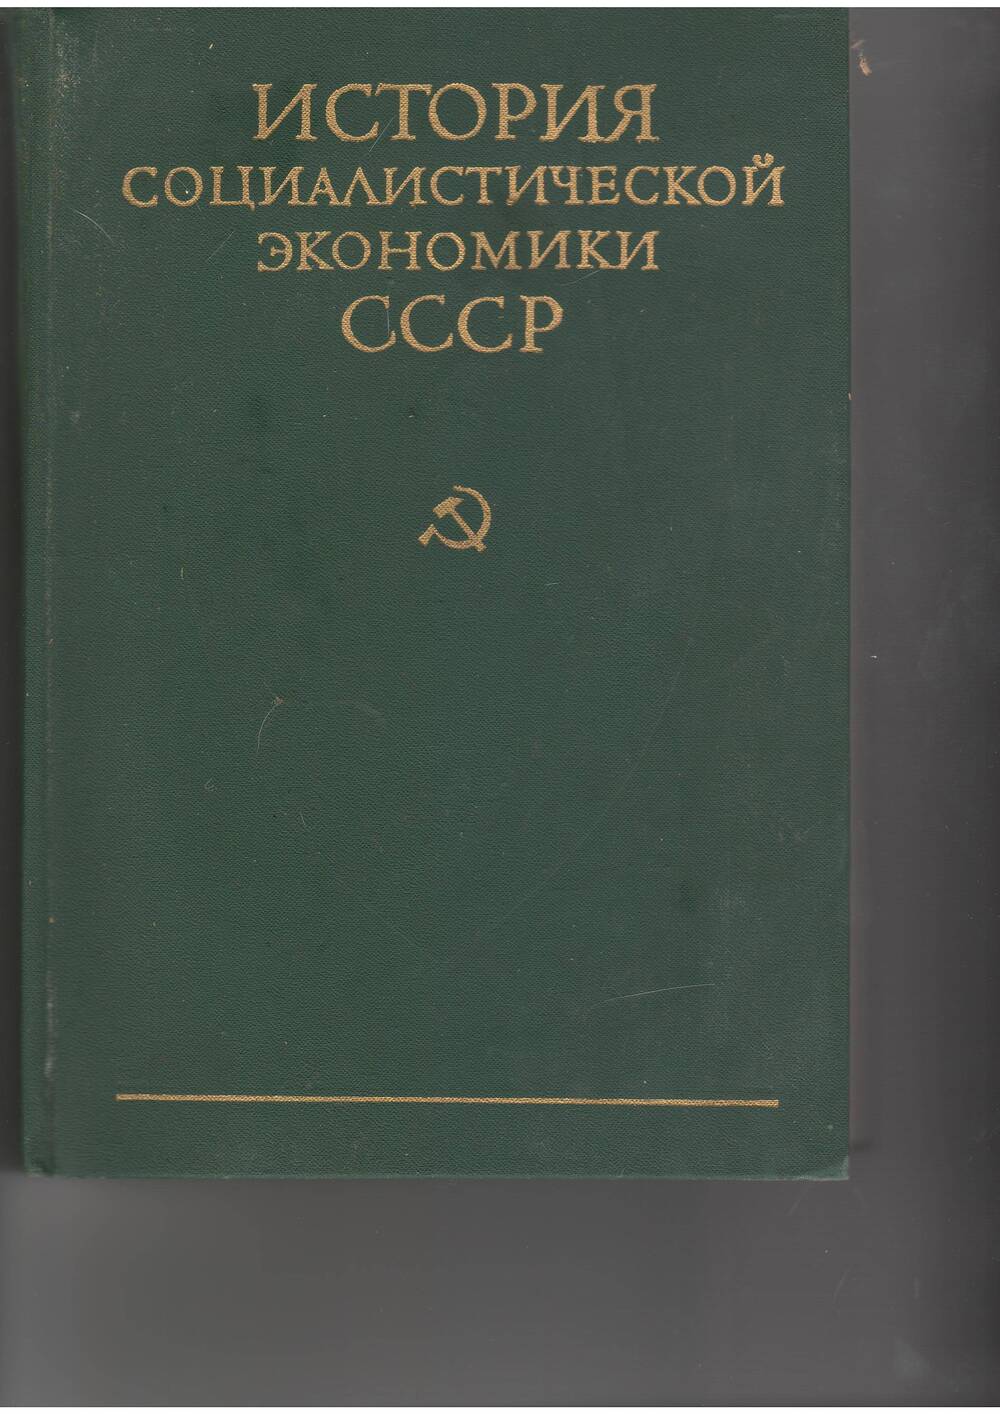 книга История социалистической экономики.т.6. - М: Наука,1980.